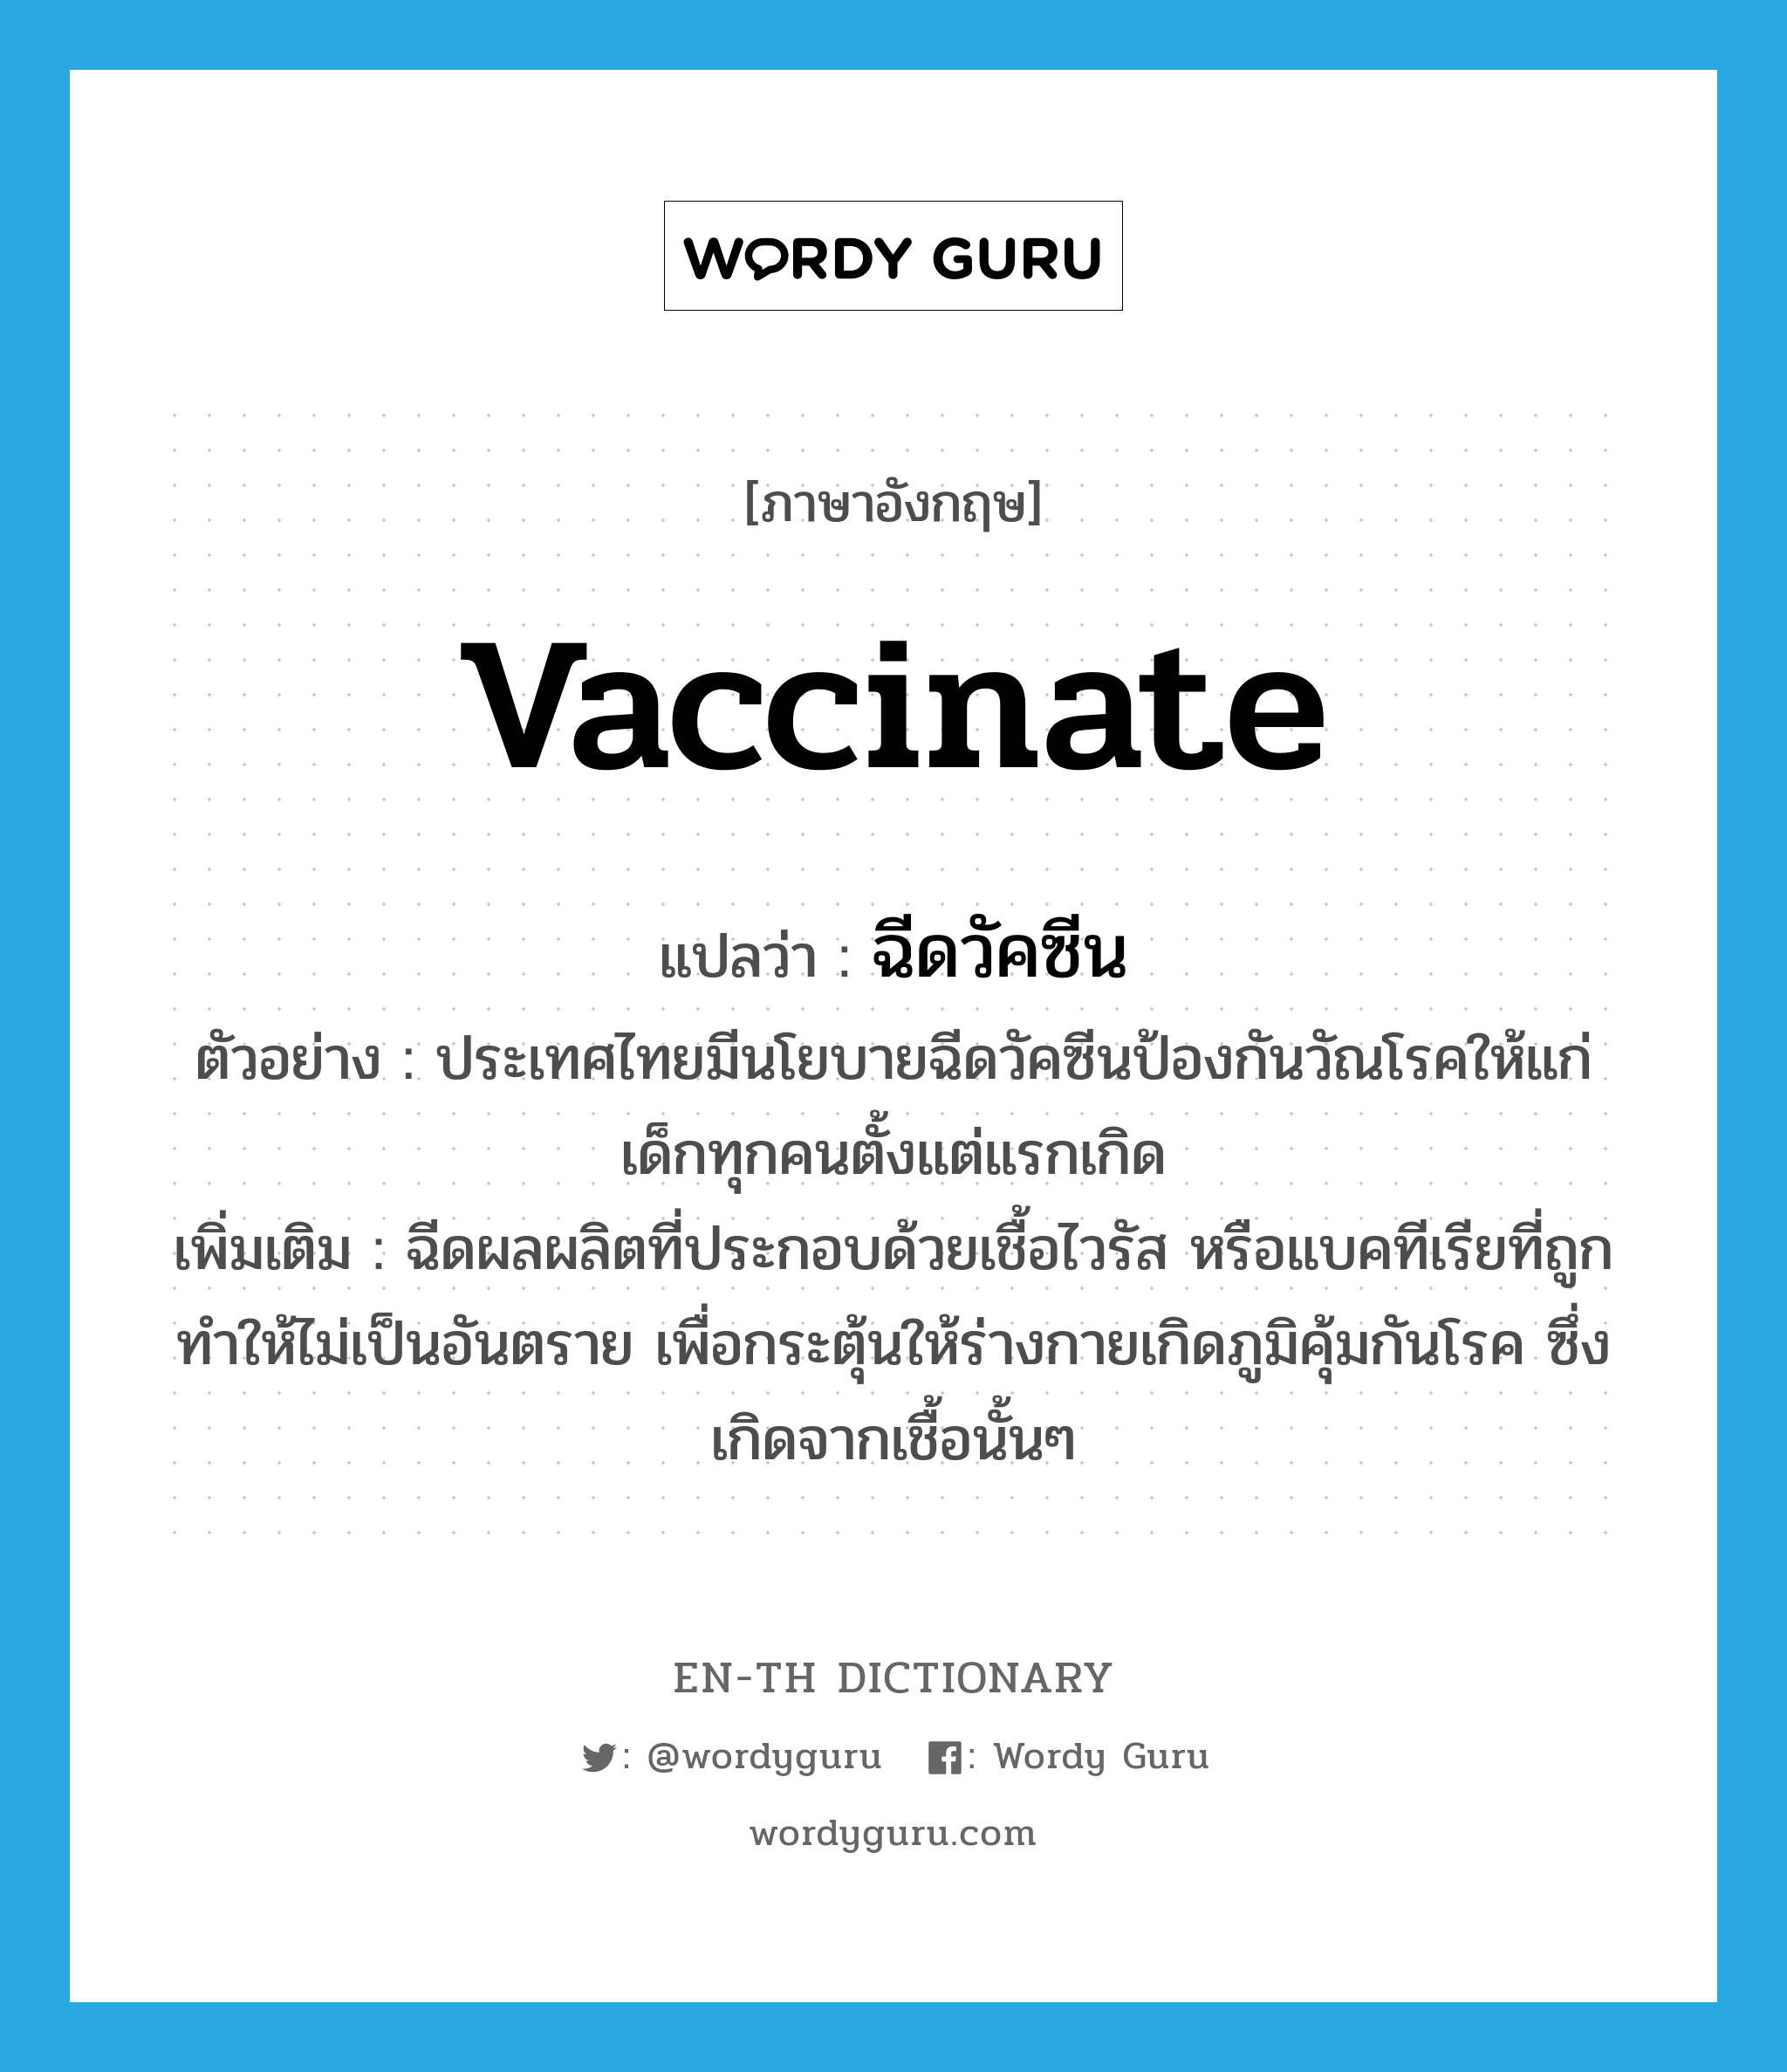 vaccinate แปลว่า?, คำศัพท์ภาษาอังกฤษ vaccinate แปลว่า ฉีดวัคซีน ประเภท V ตัวอย่าง ประเทศไทยมีนโยบายฉีดวัคซีนป้องกันวัณโรคให้แก่เด็กทุกคนตั้งแต่แรกเกิด เพิ่มเติม ฉีดผลผลิตที่ประกอบด้วยเชื้อไวรัส หรือแบคทีเรียที่ถูกทำให้ไม่เป็นอันตราย เพื่อกระตุ้นให้ร่างกายเกิดภูมิคุ้มกันโรค ซึ่งเกิดจากเชื้อนั้นๆ หมวด V